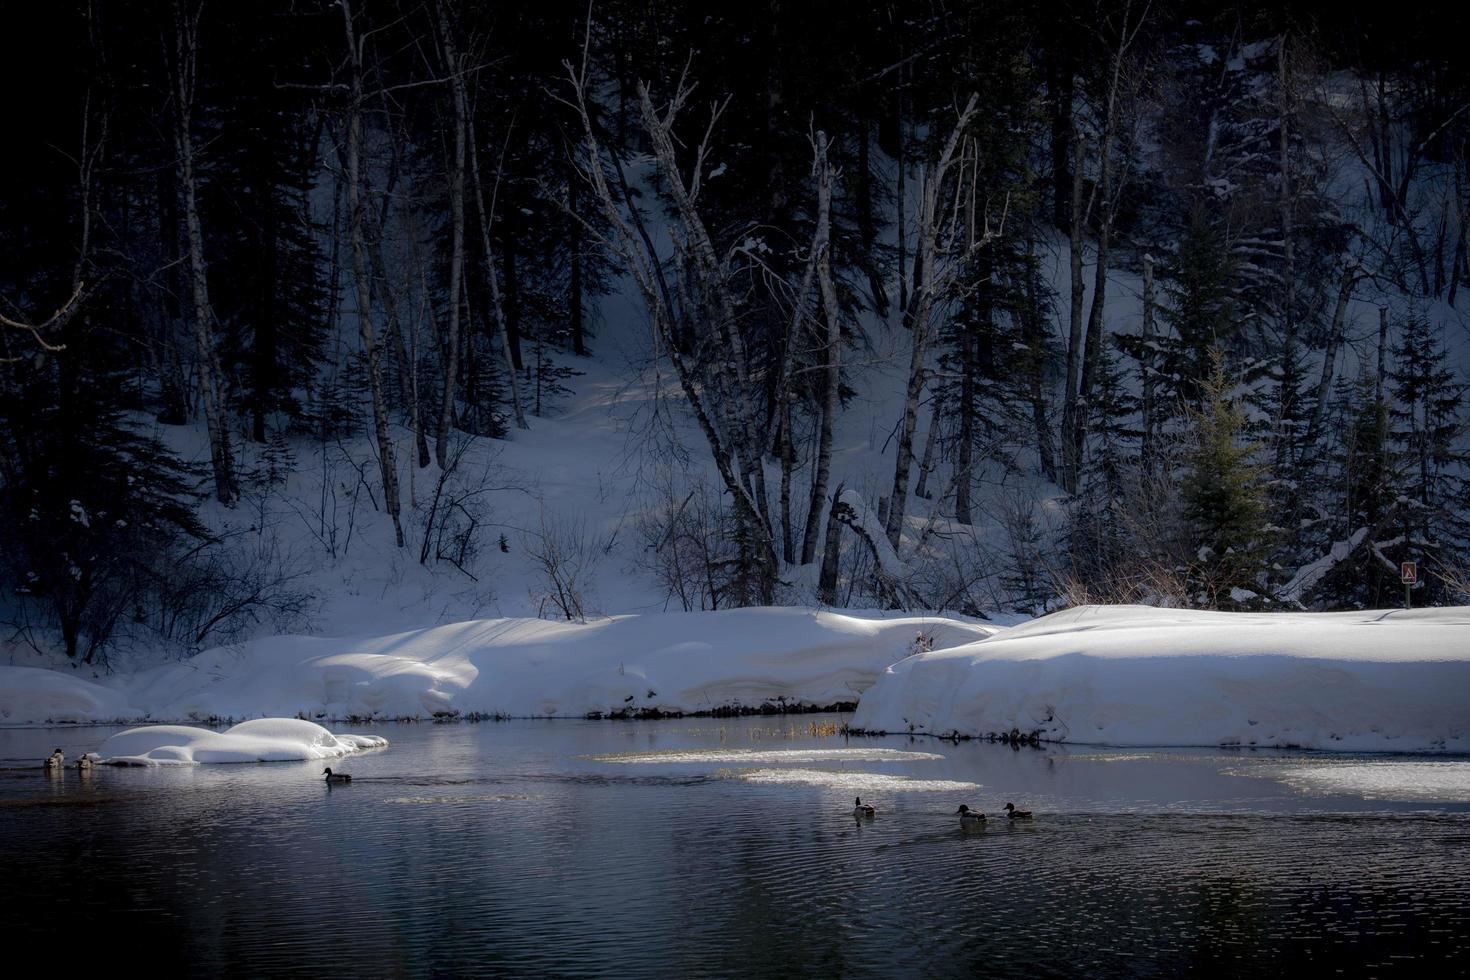 lago cubierto de nieve foto